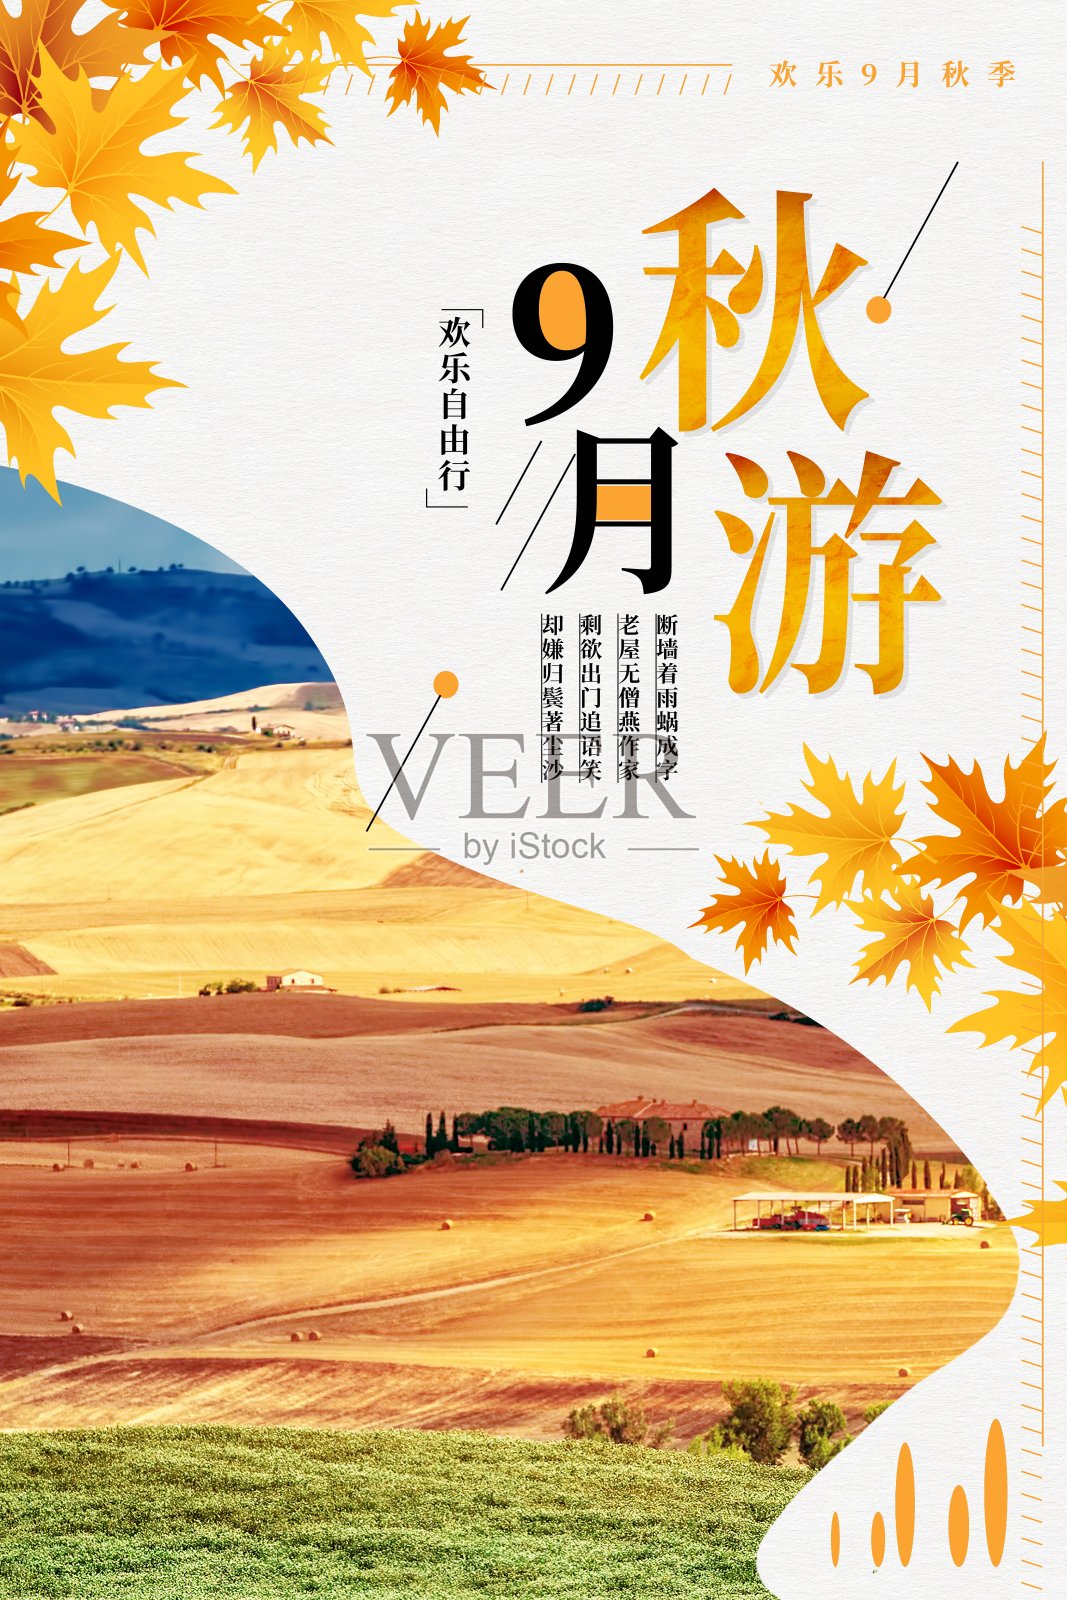 9月秋游旅行海报设计模板素材